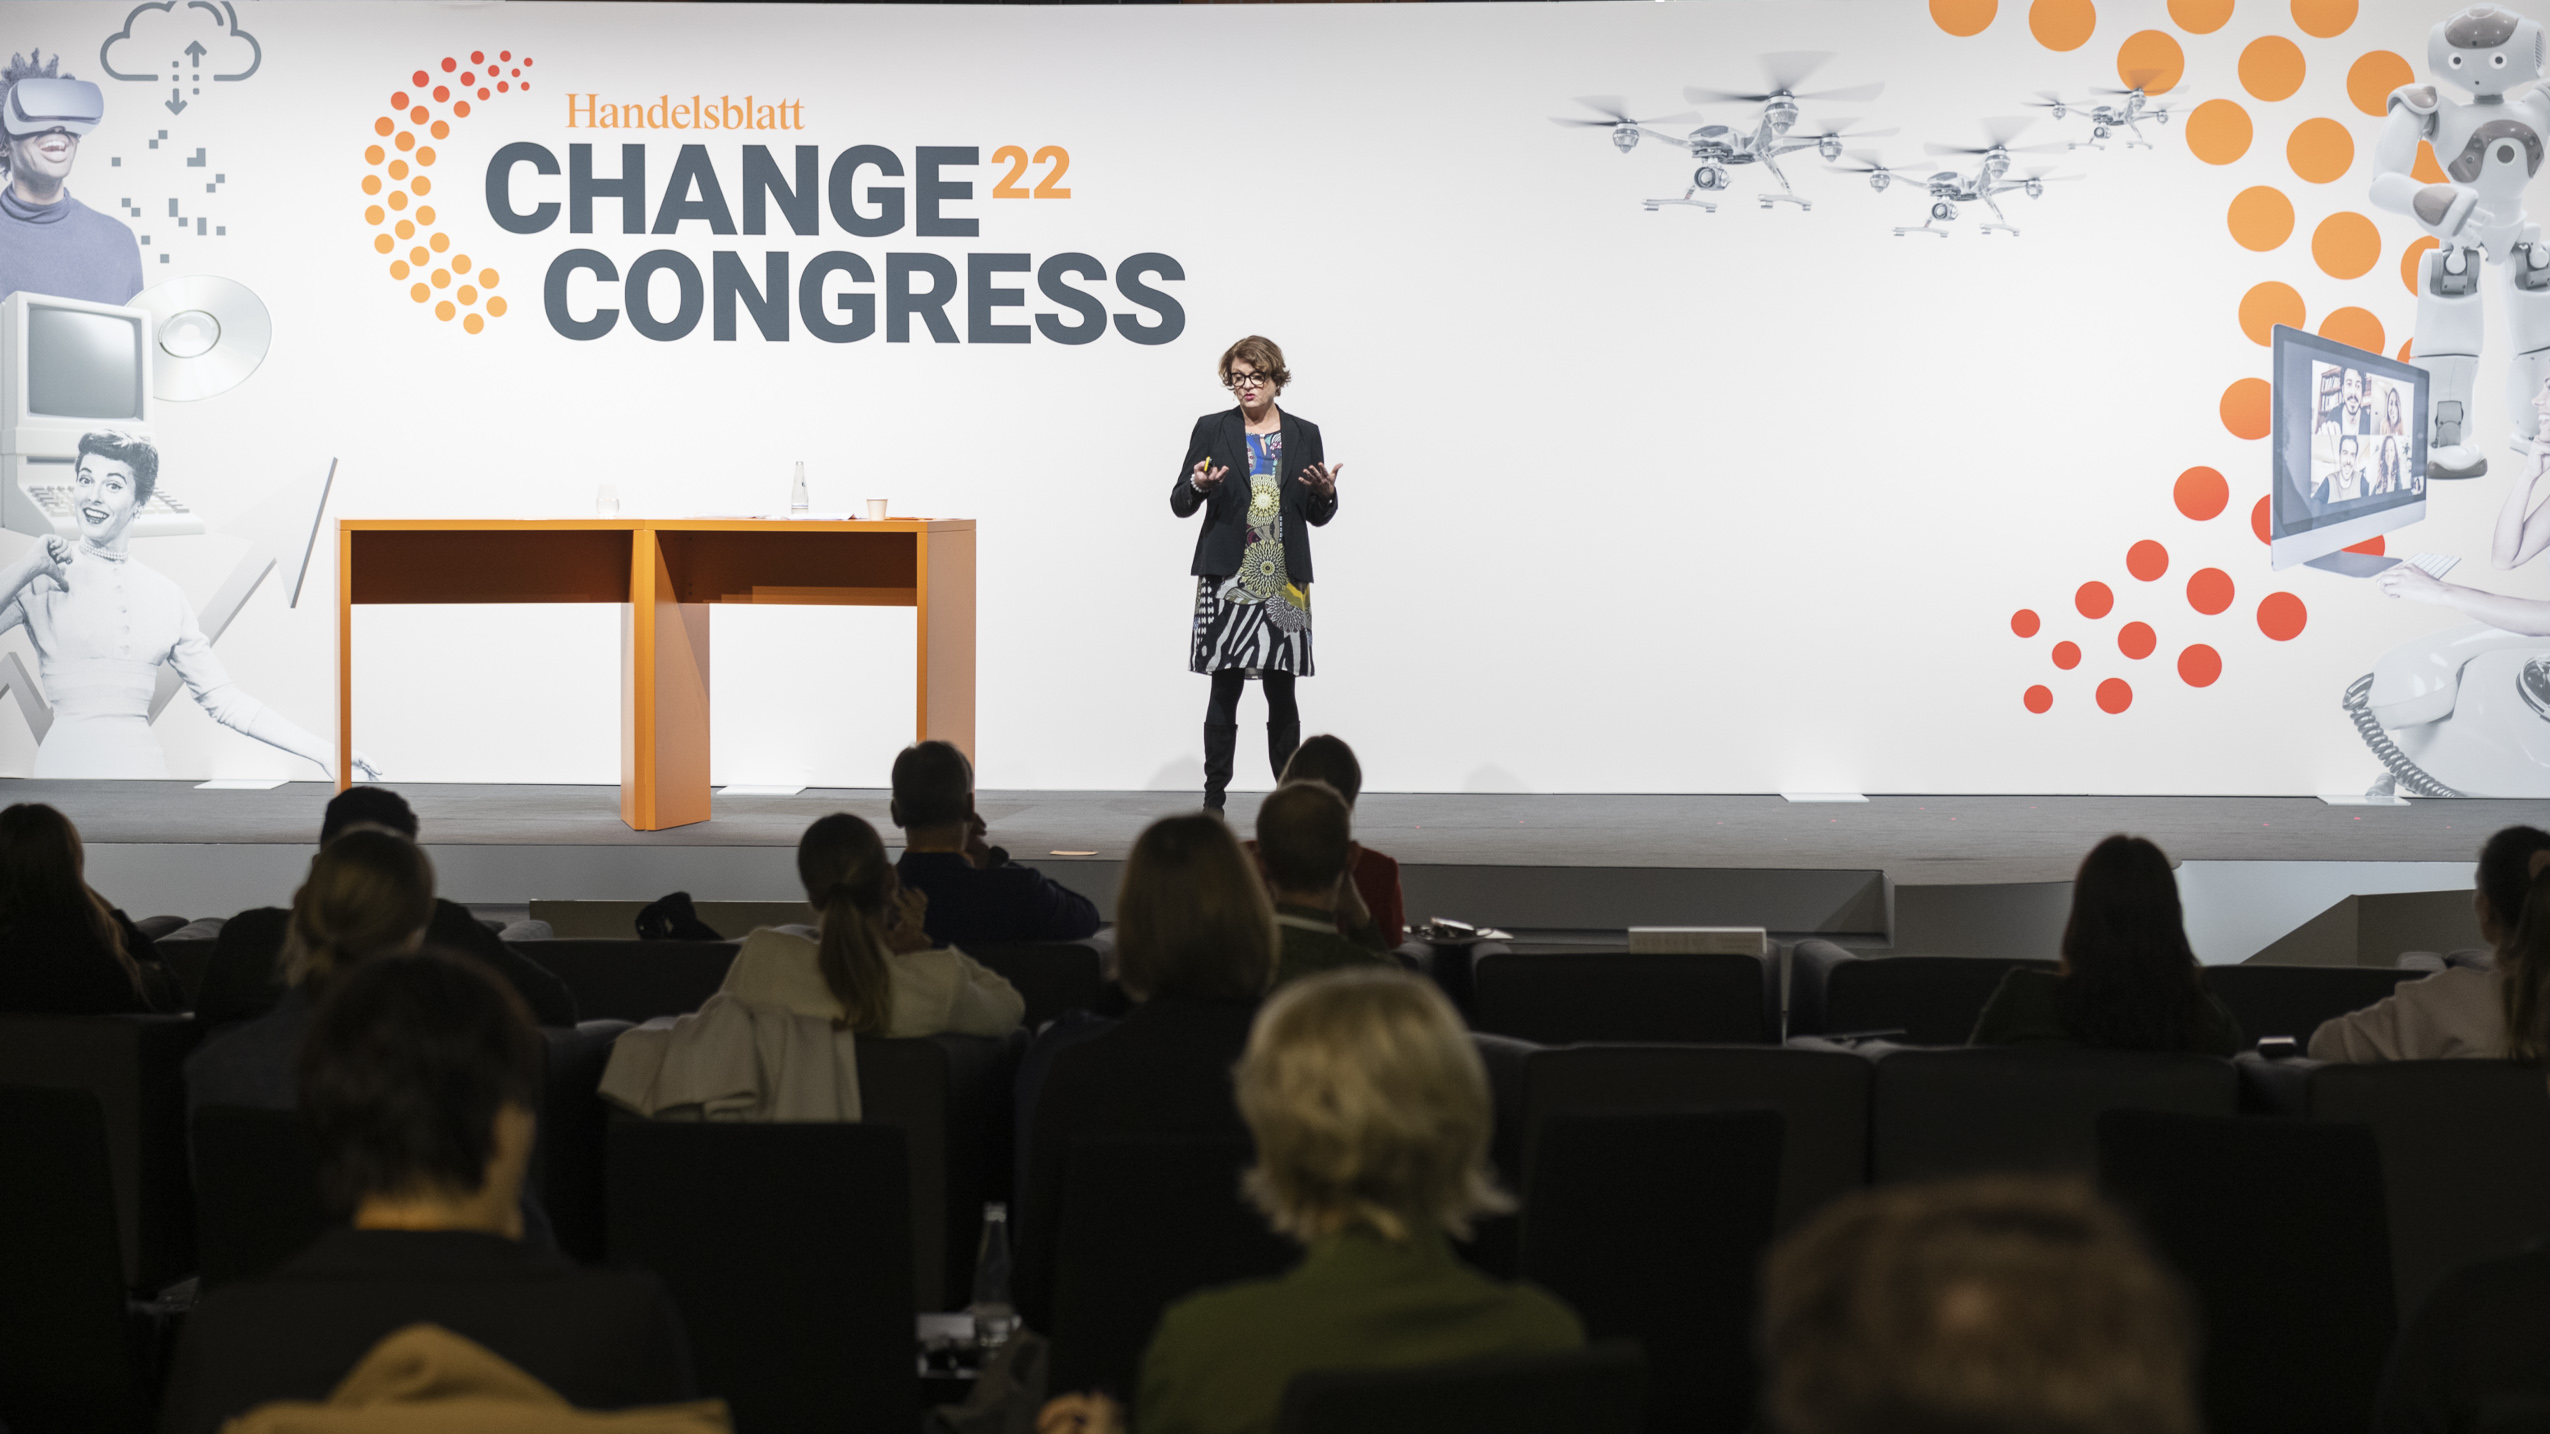 Change Congres 2022 - Ulrike Lehmann Vortrag